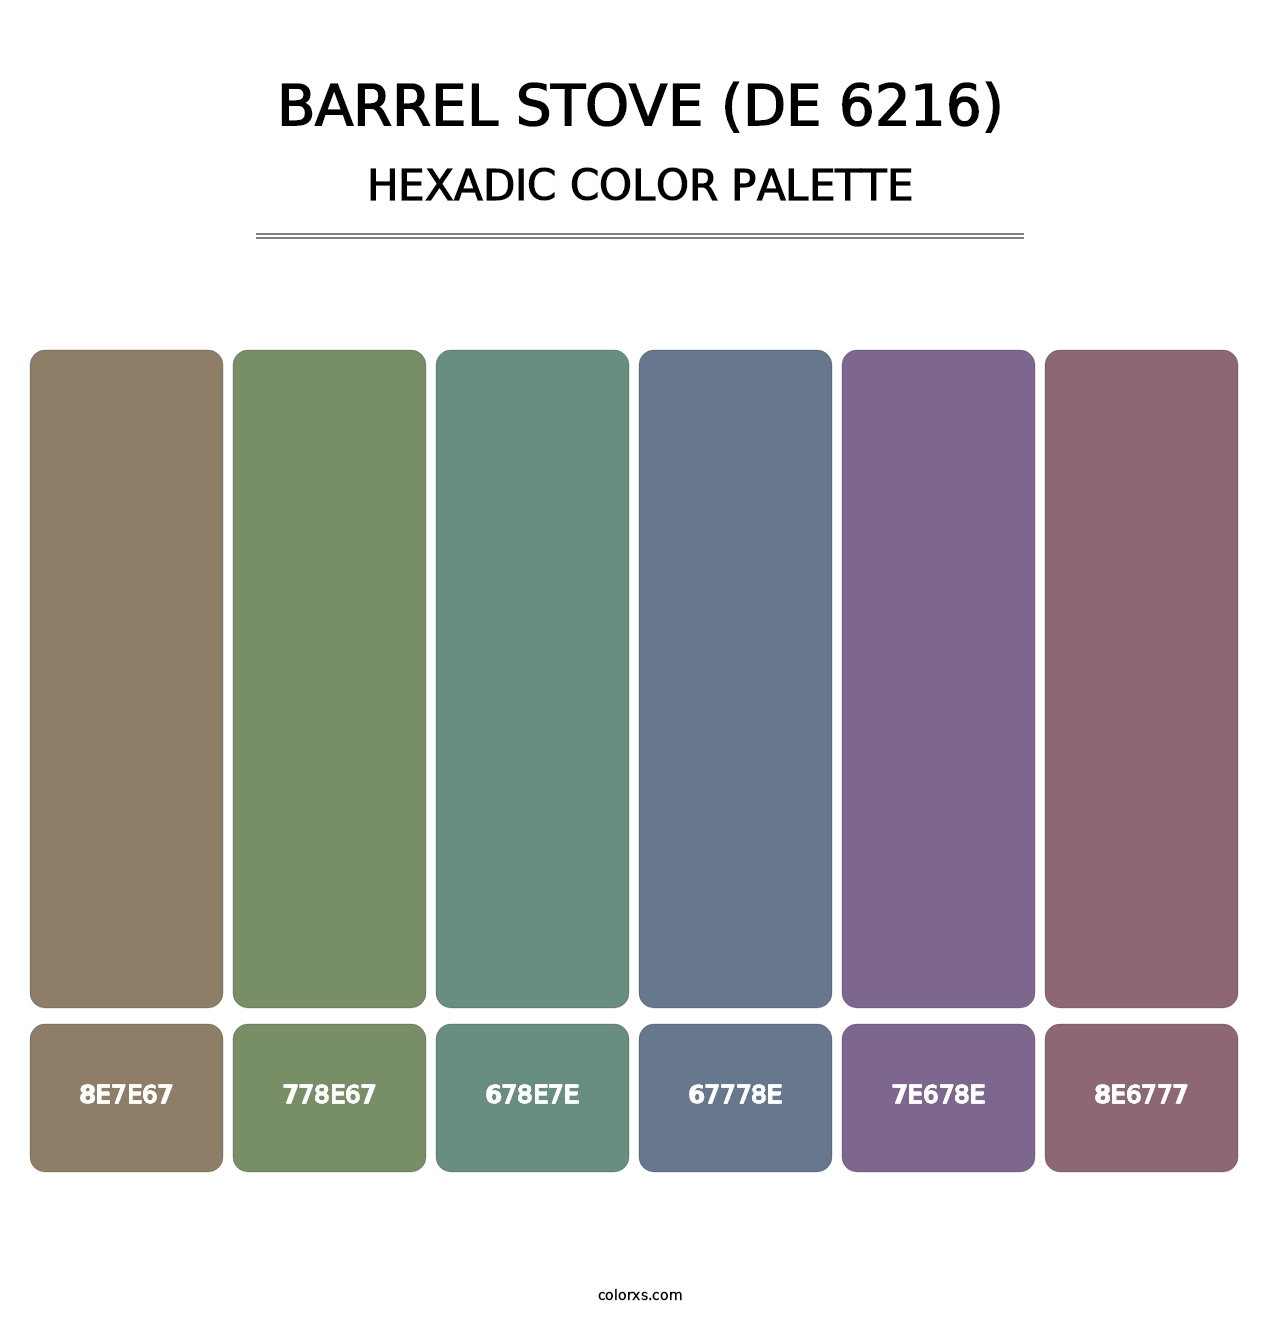 Barrel Stove (DE 6216) - Hexadic Color Palette